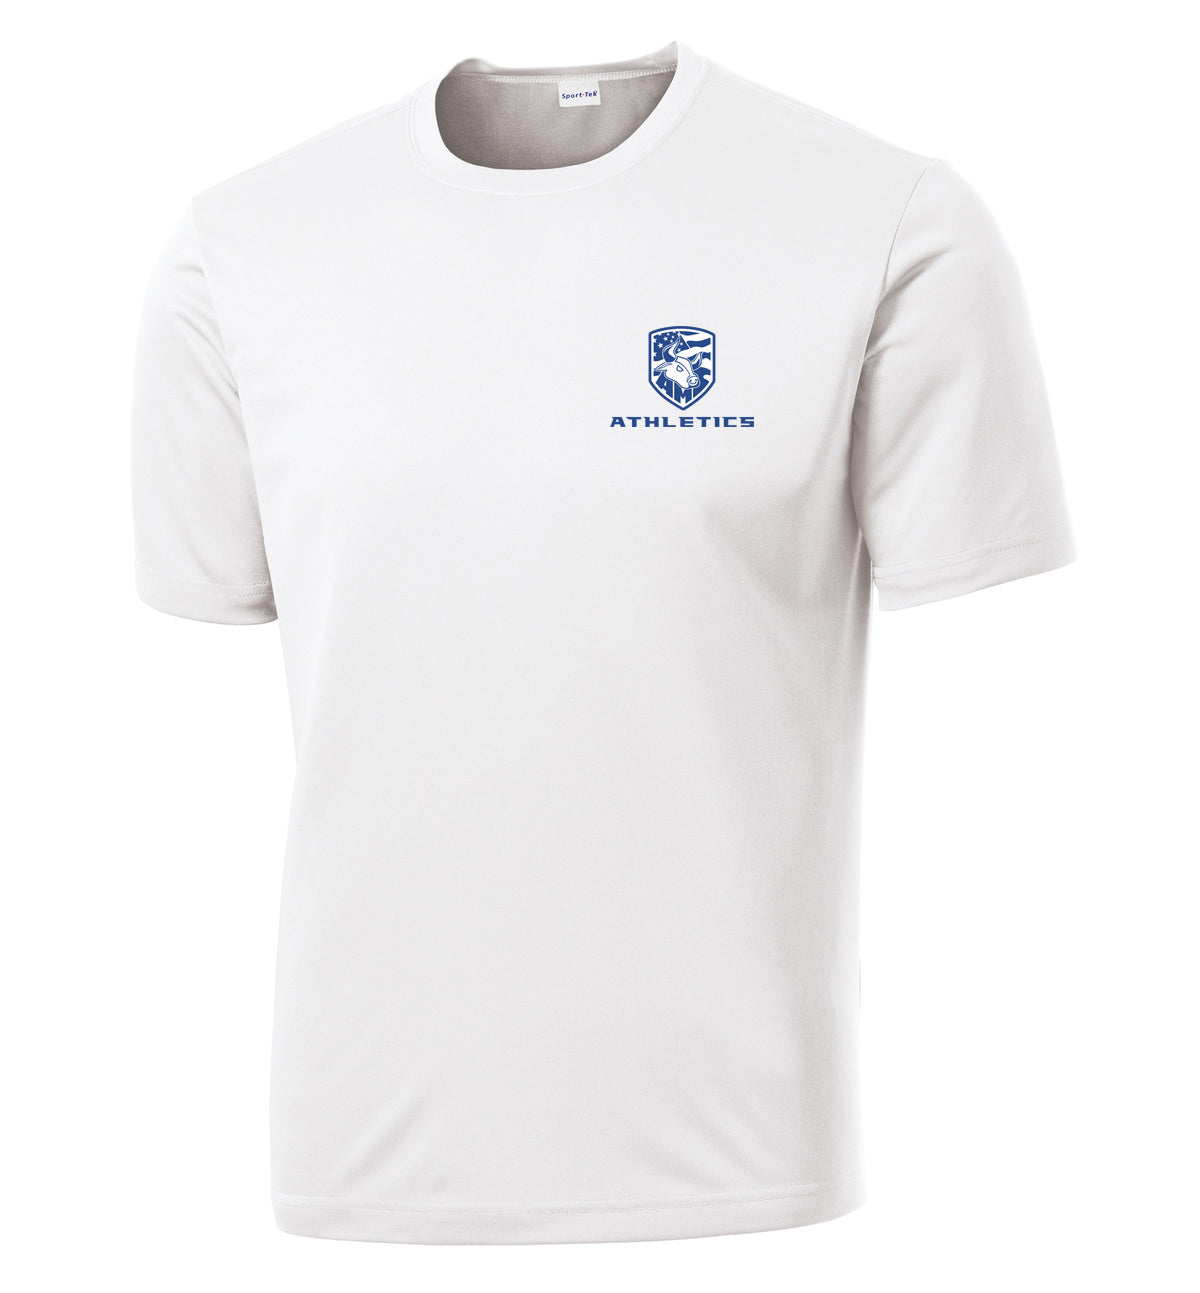 Accompsett Middle School Men's White Performance T-Shirt